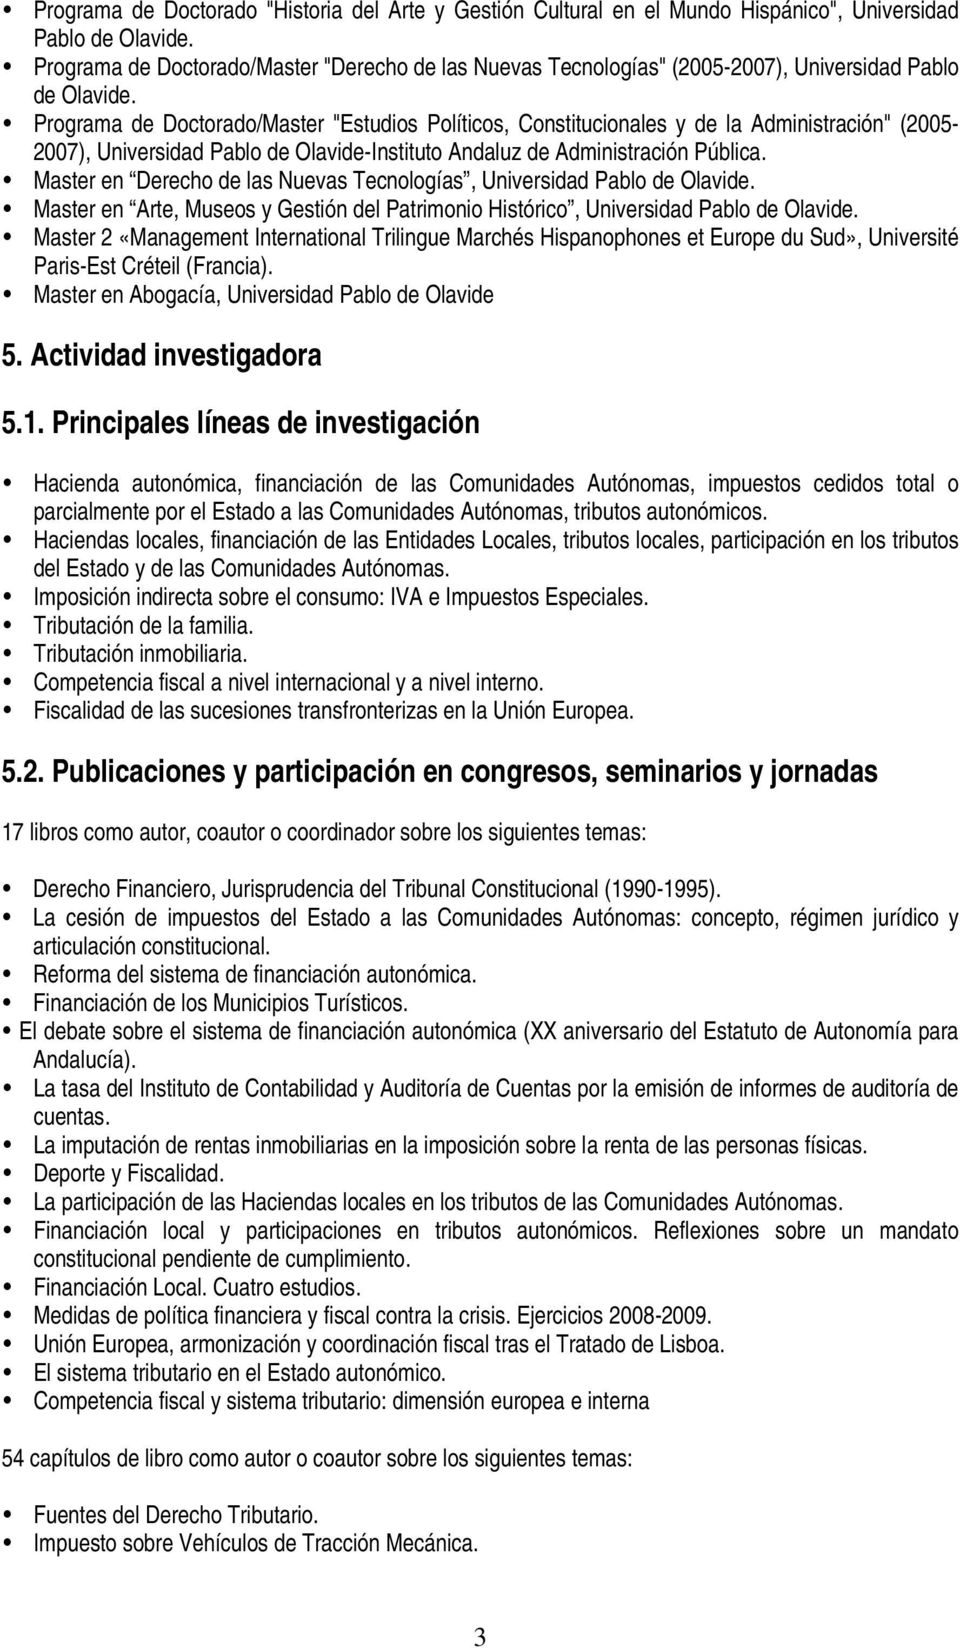 Programa de Doctorado/Master "Estudios Políticos, Constitucionales y de la Administración" (2005-2007), Universidad Pablo de Olavide-Instituto Andaluz de Administración Pública.